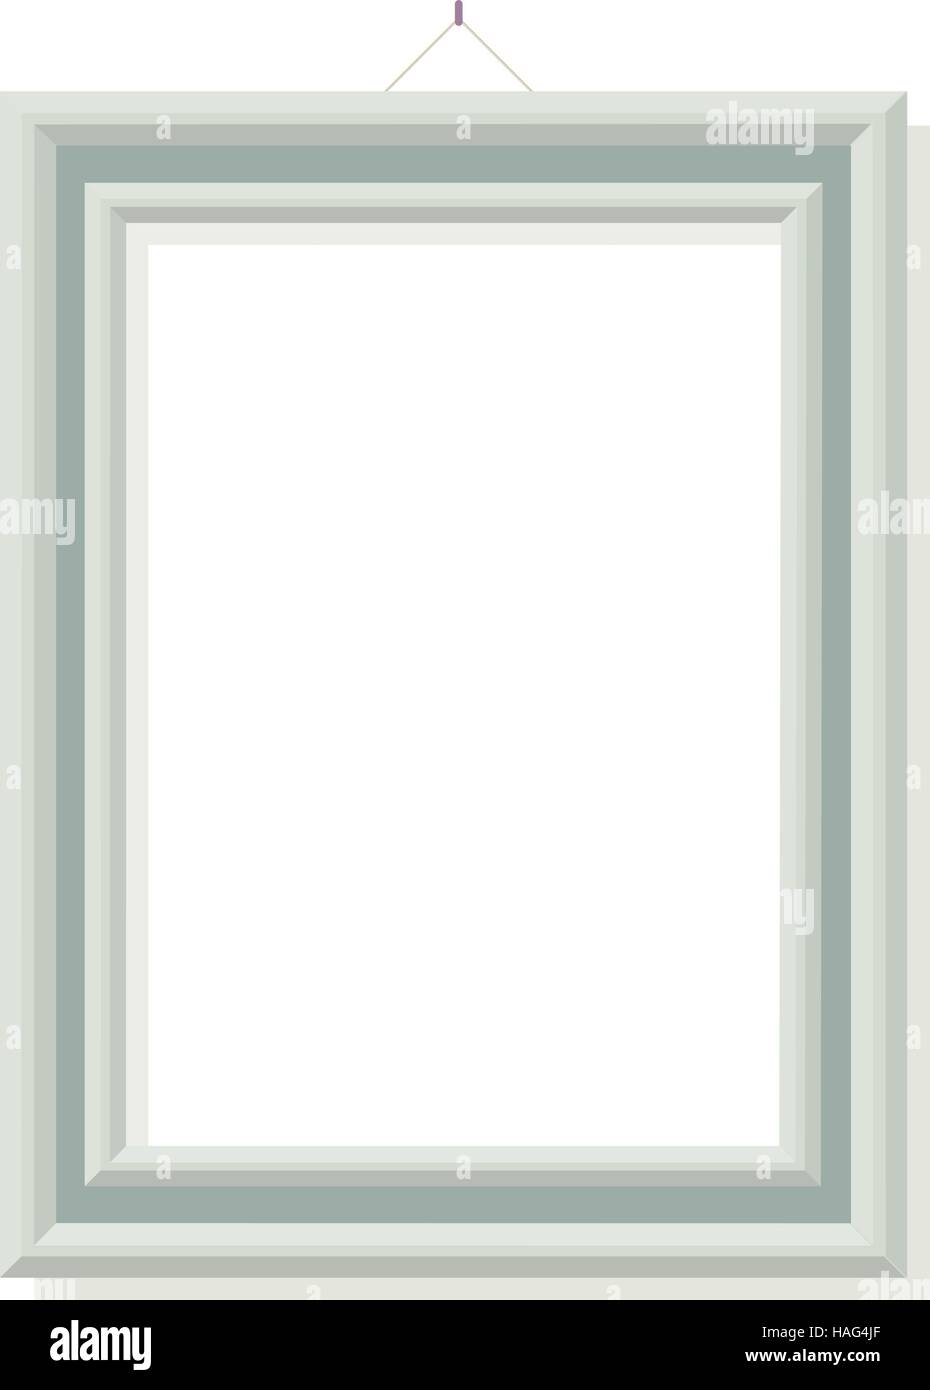 Verde isolato photo frame sul muro bianco Illustrazione Vettoriale